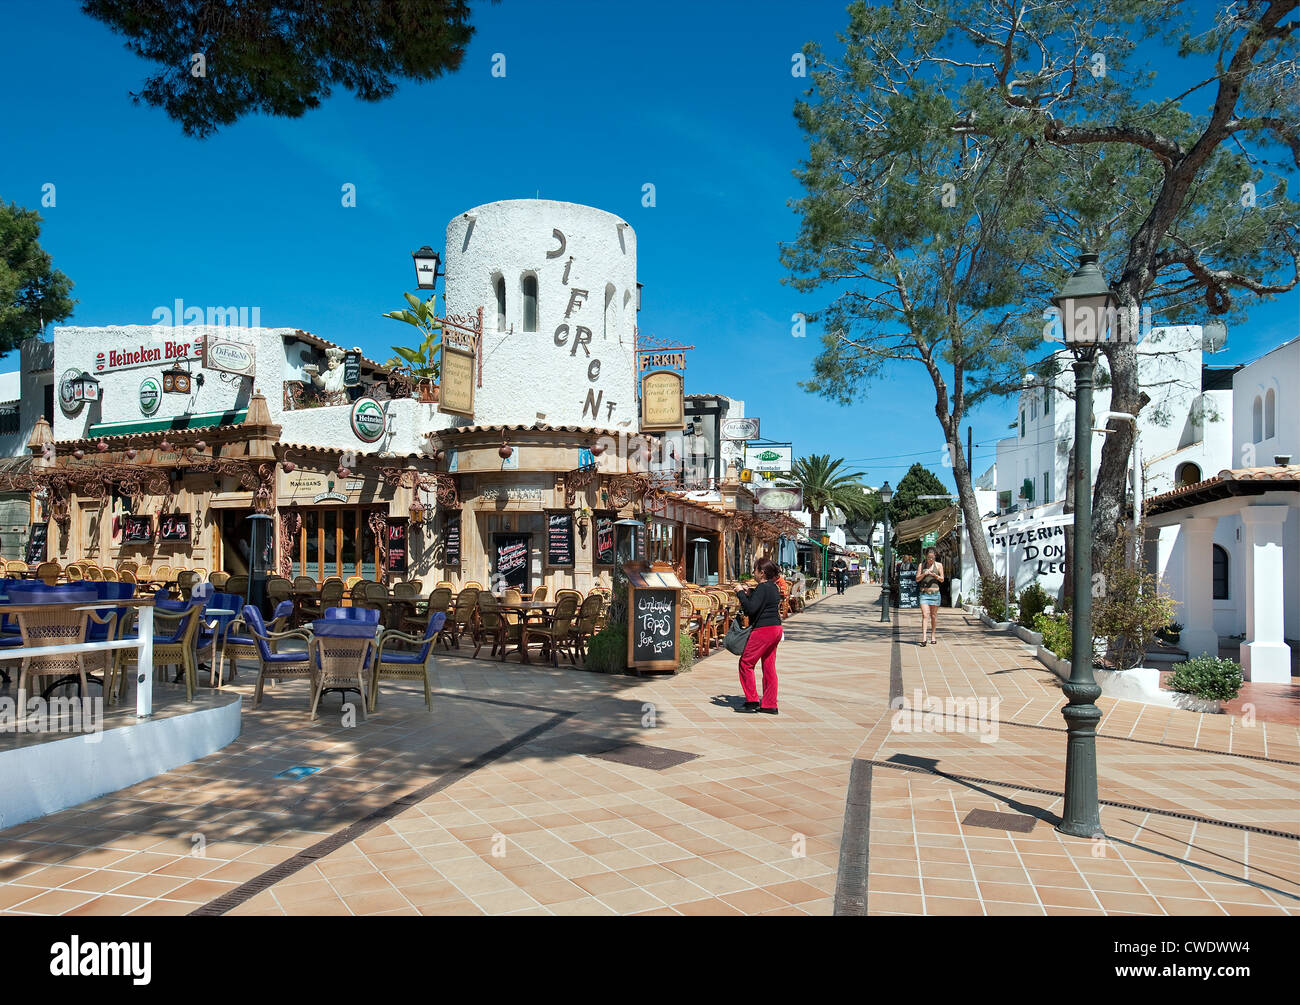 Town centre, Cala D'Or, Majorca, Balearic islands, Spain Stock Photo